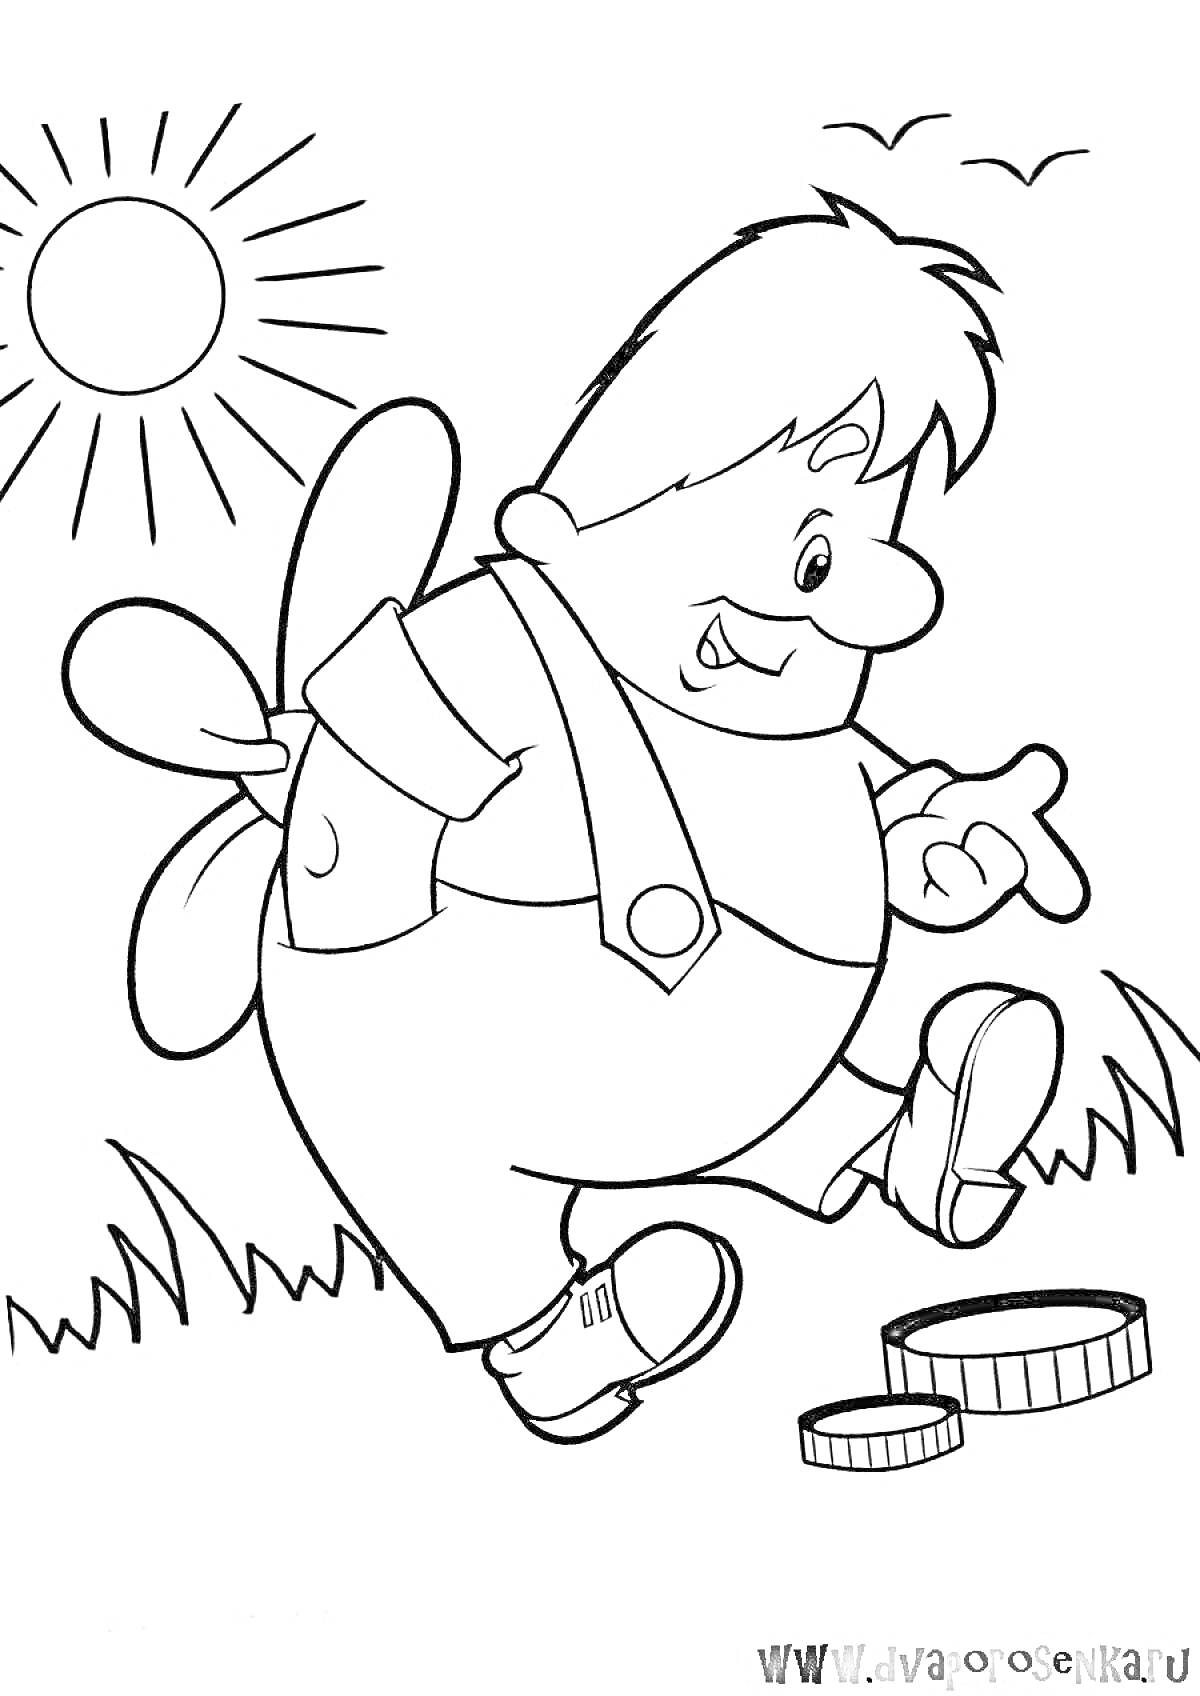 Раскраска Мальчик с пропеллером на спине гуляет по траве под солнцем и небе с облаками и птицами, рядом лежат каки-то предметы